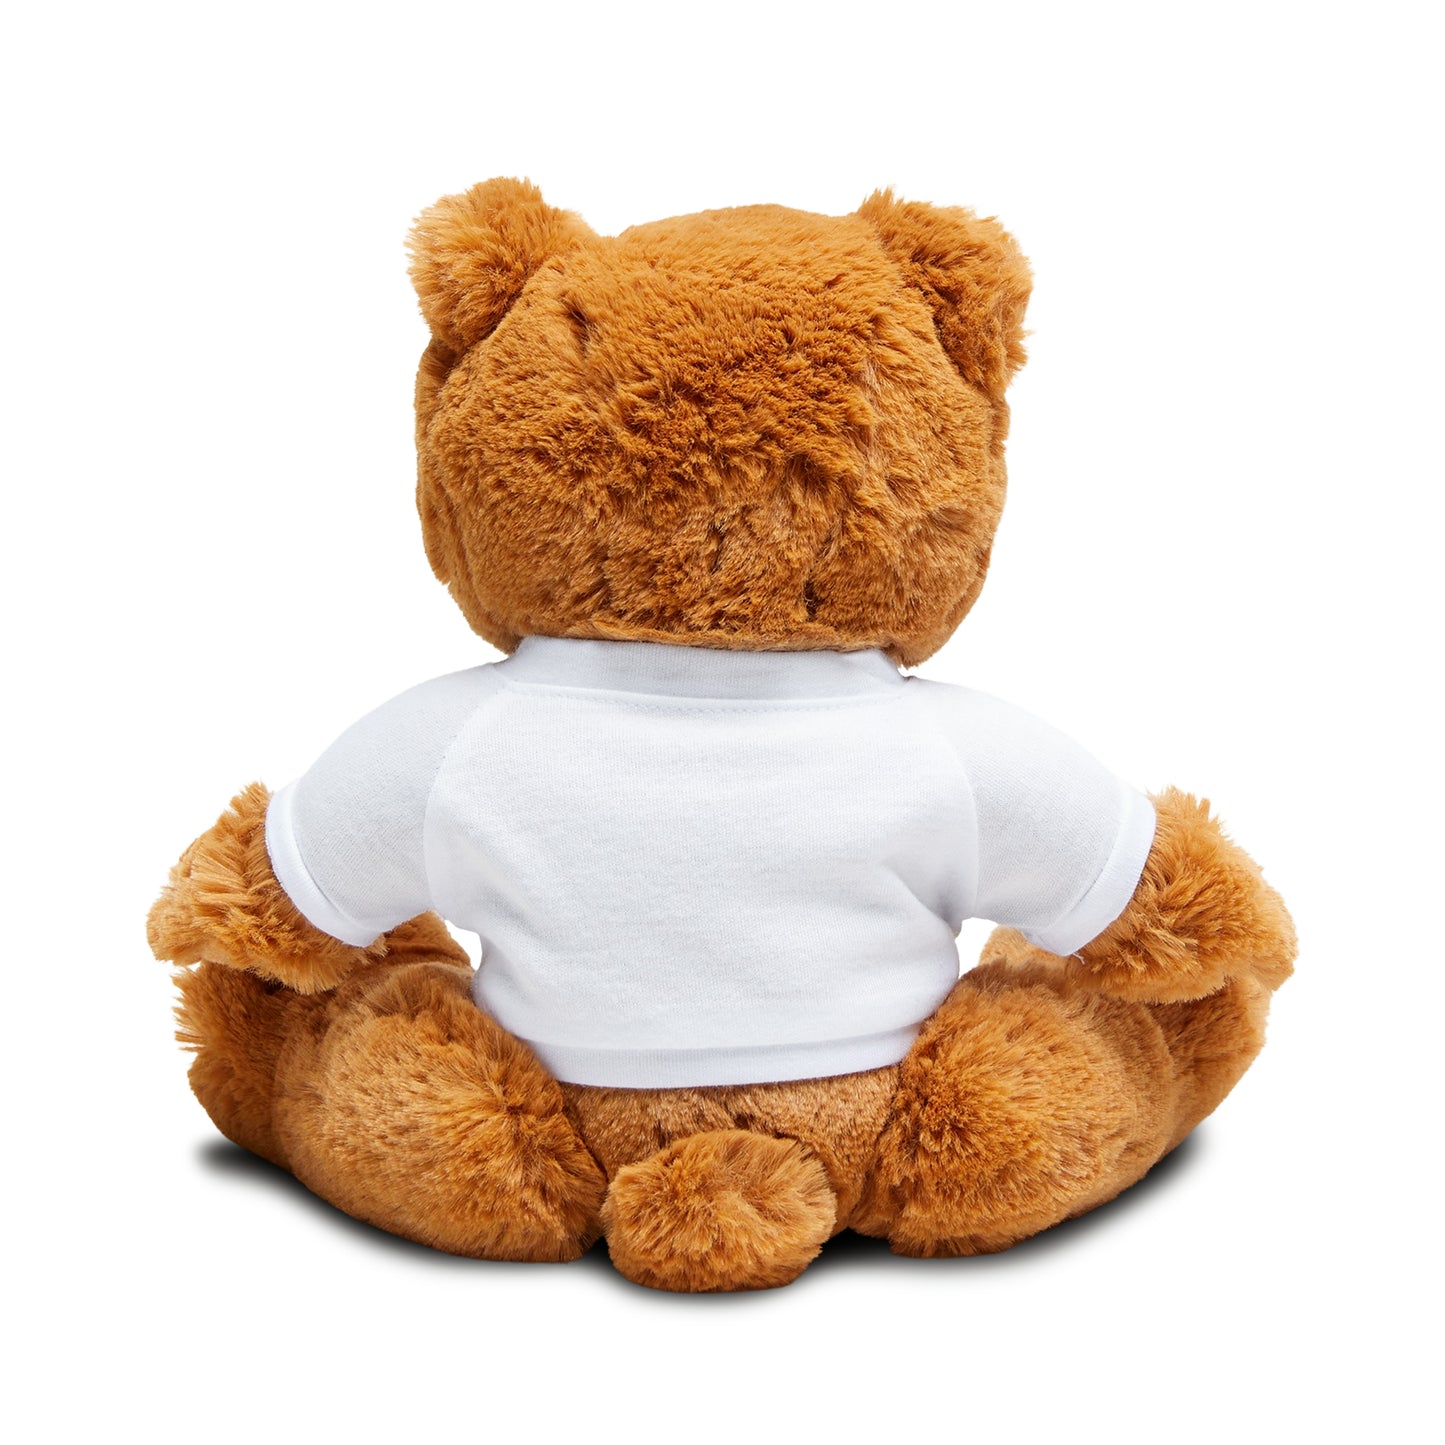 Hibernia - Teddy Bear